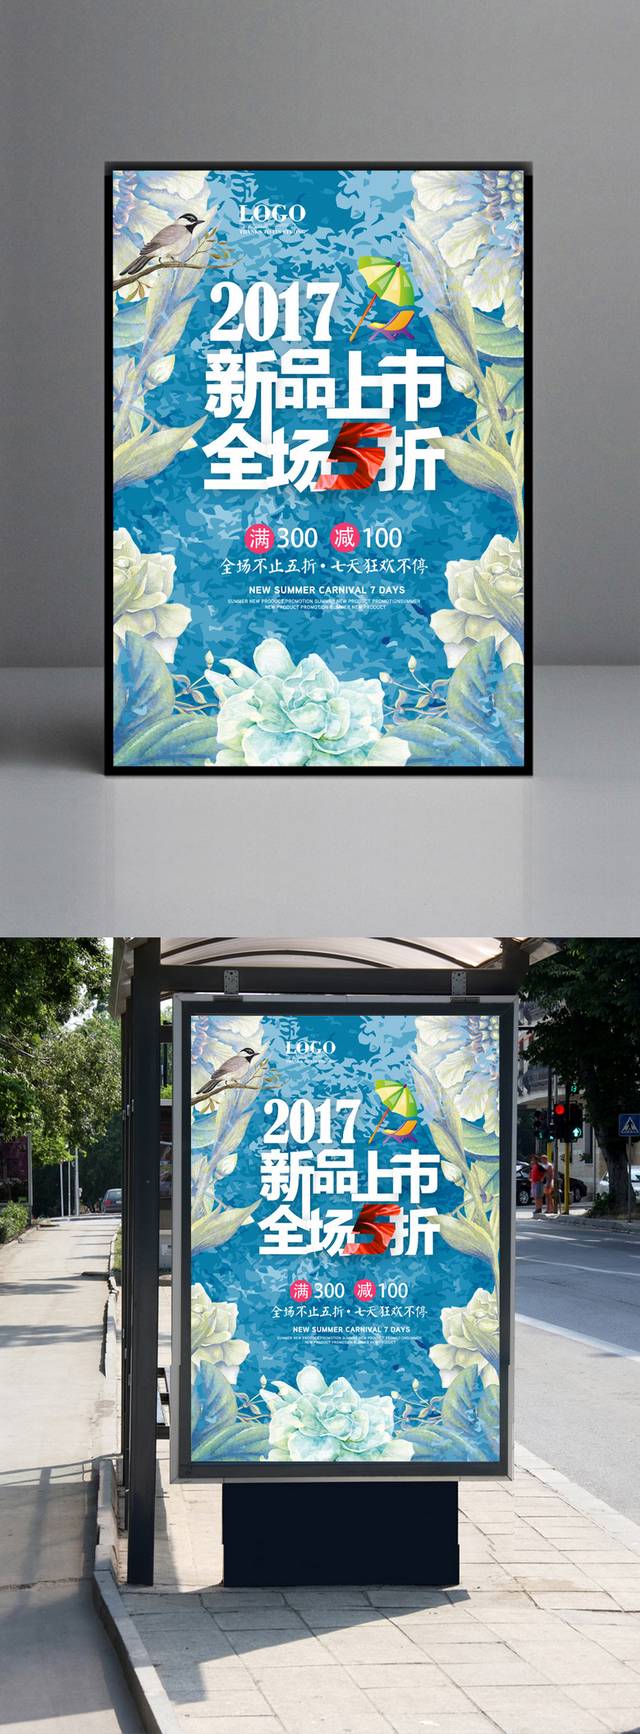 精美时尚夏日促销海报模板下载